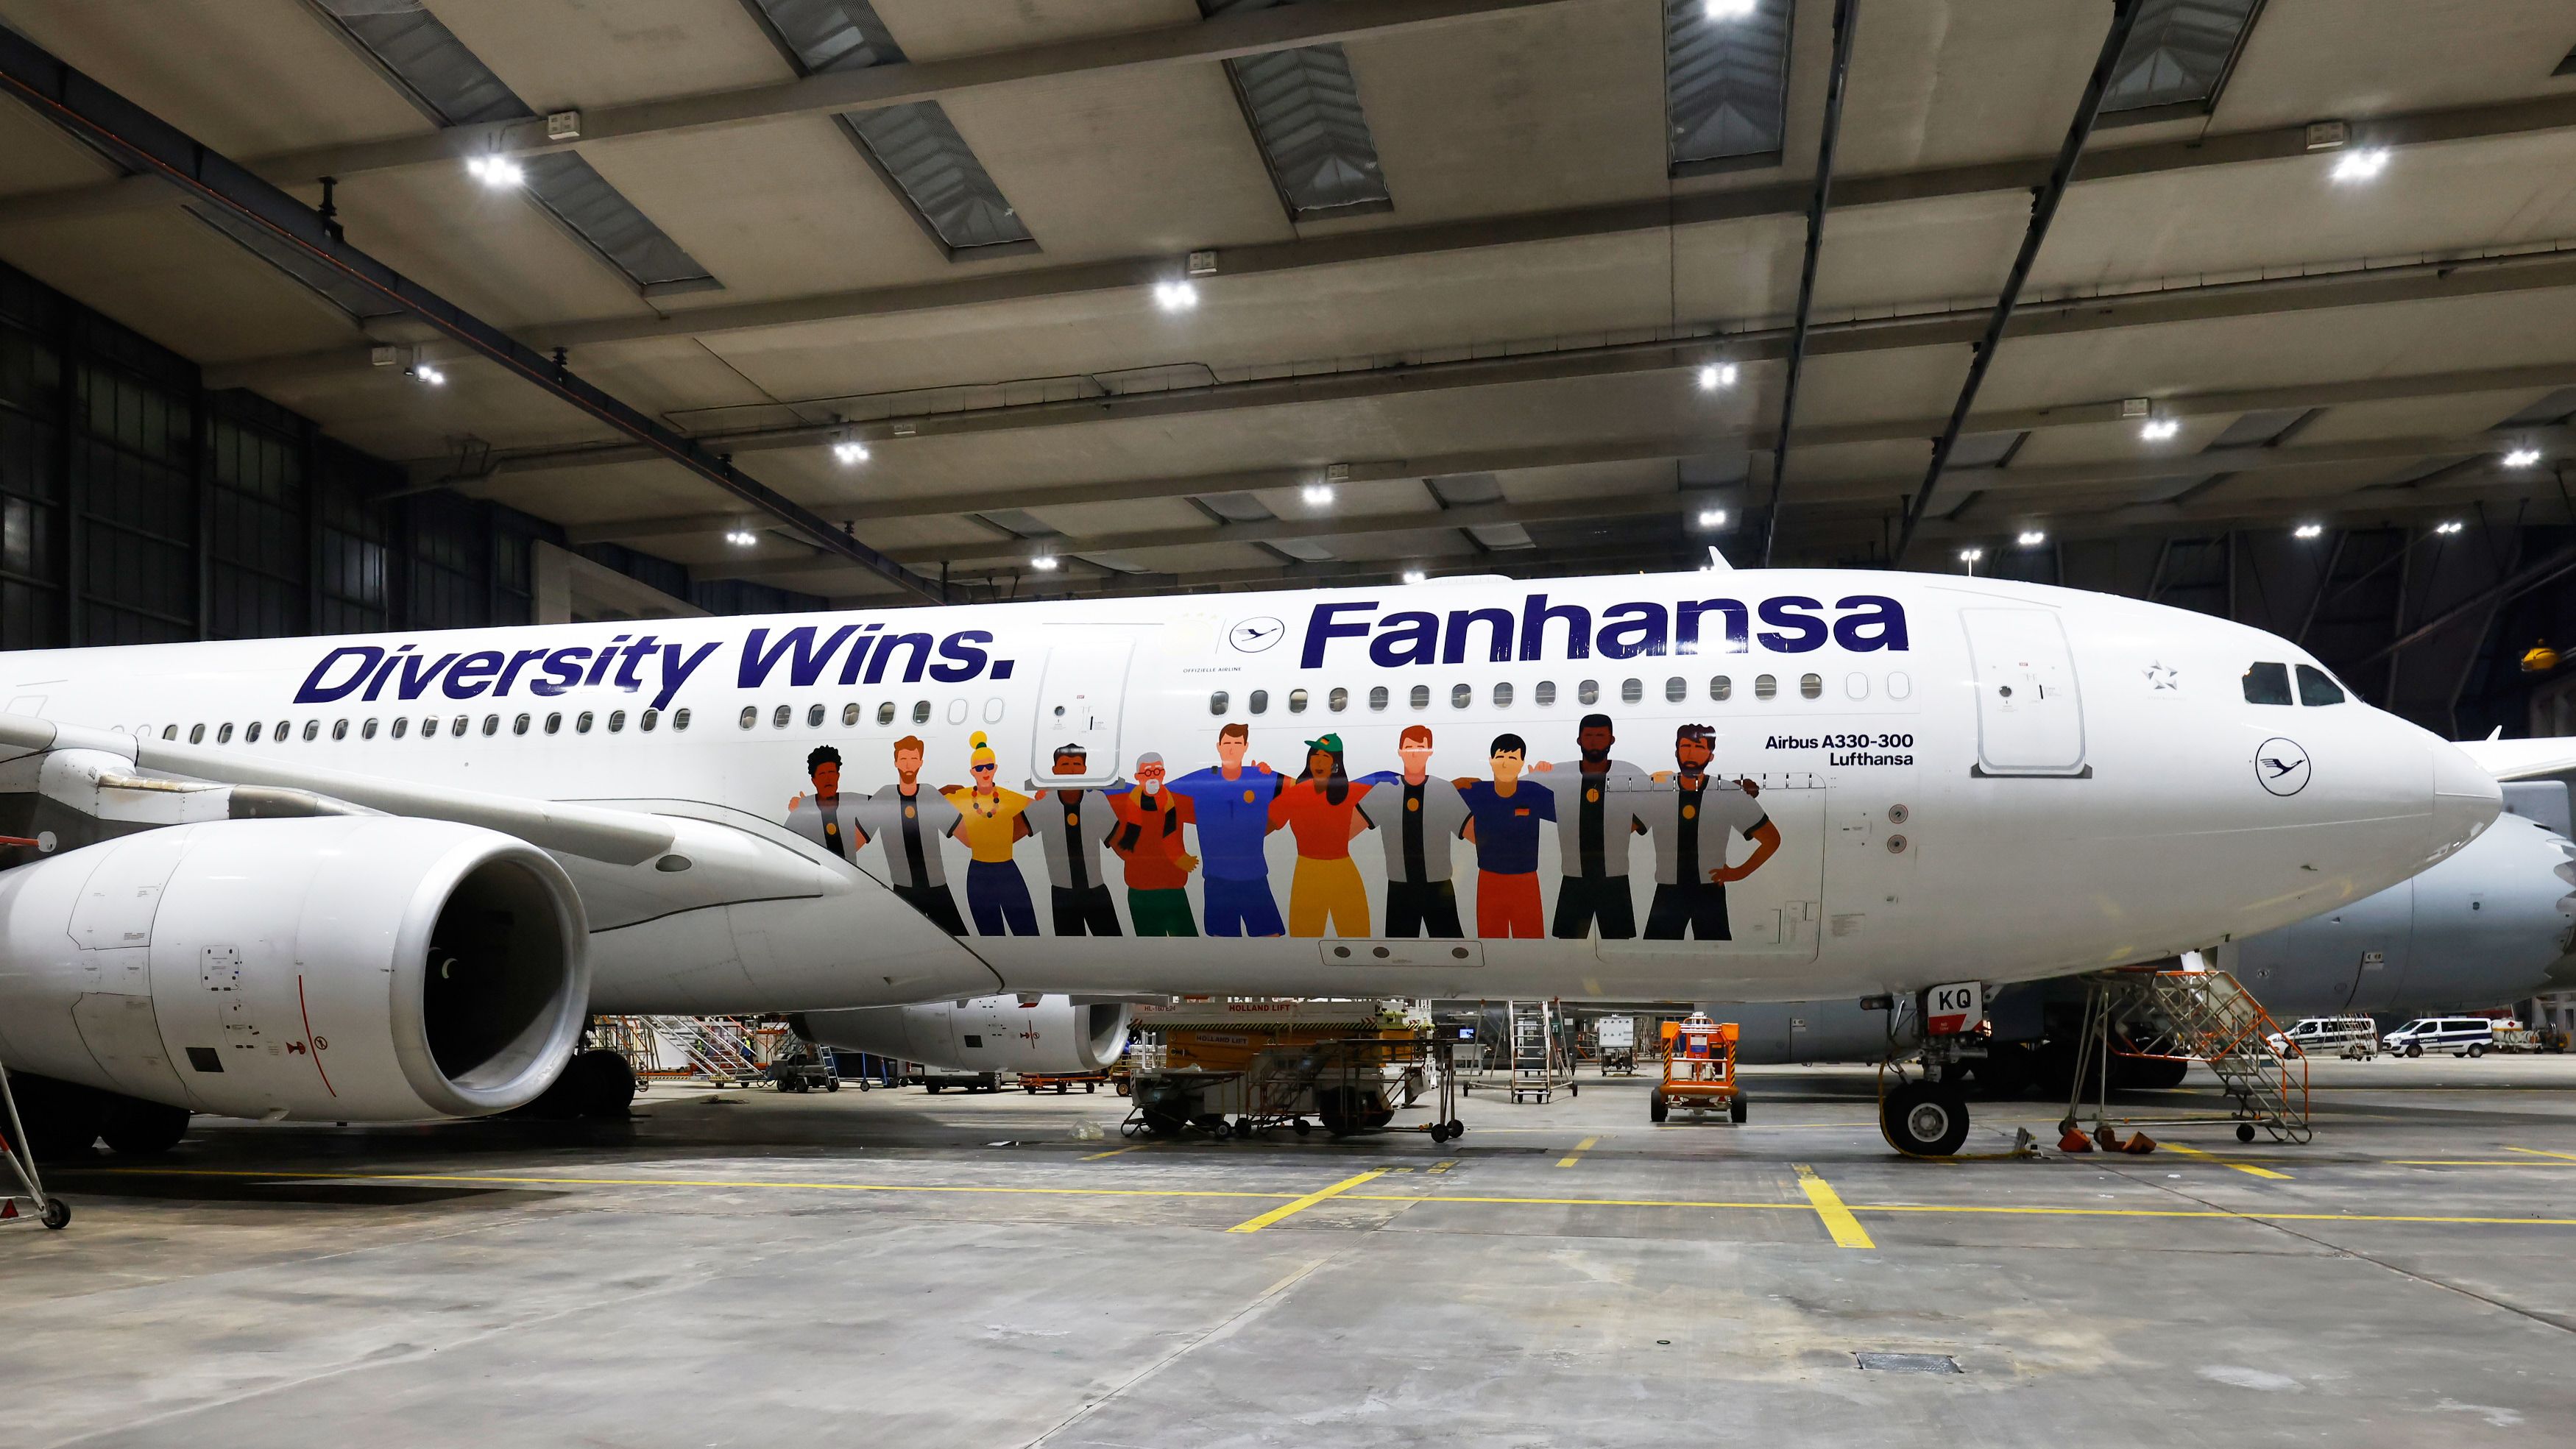 Lufthansa A330-300 sporting the Fanhansa livery